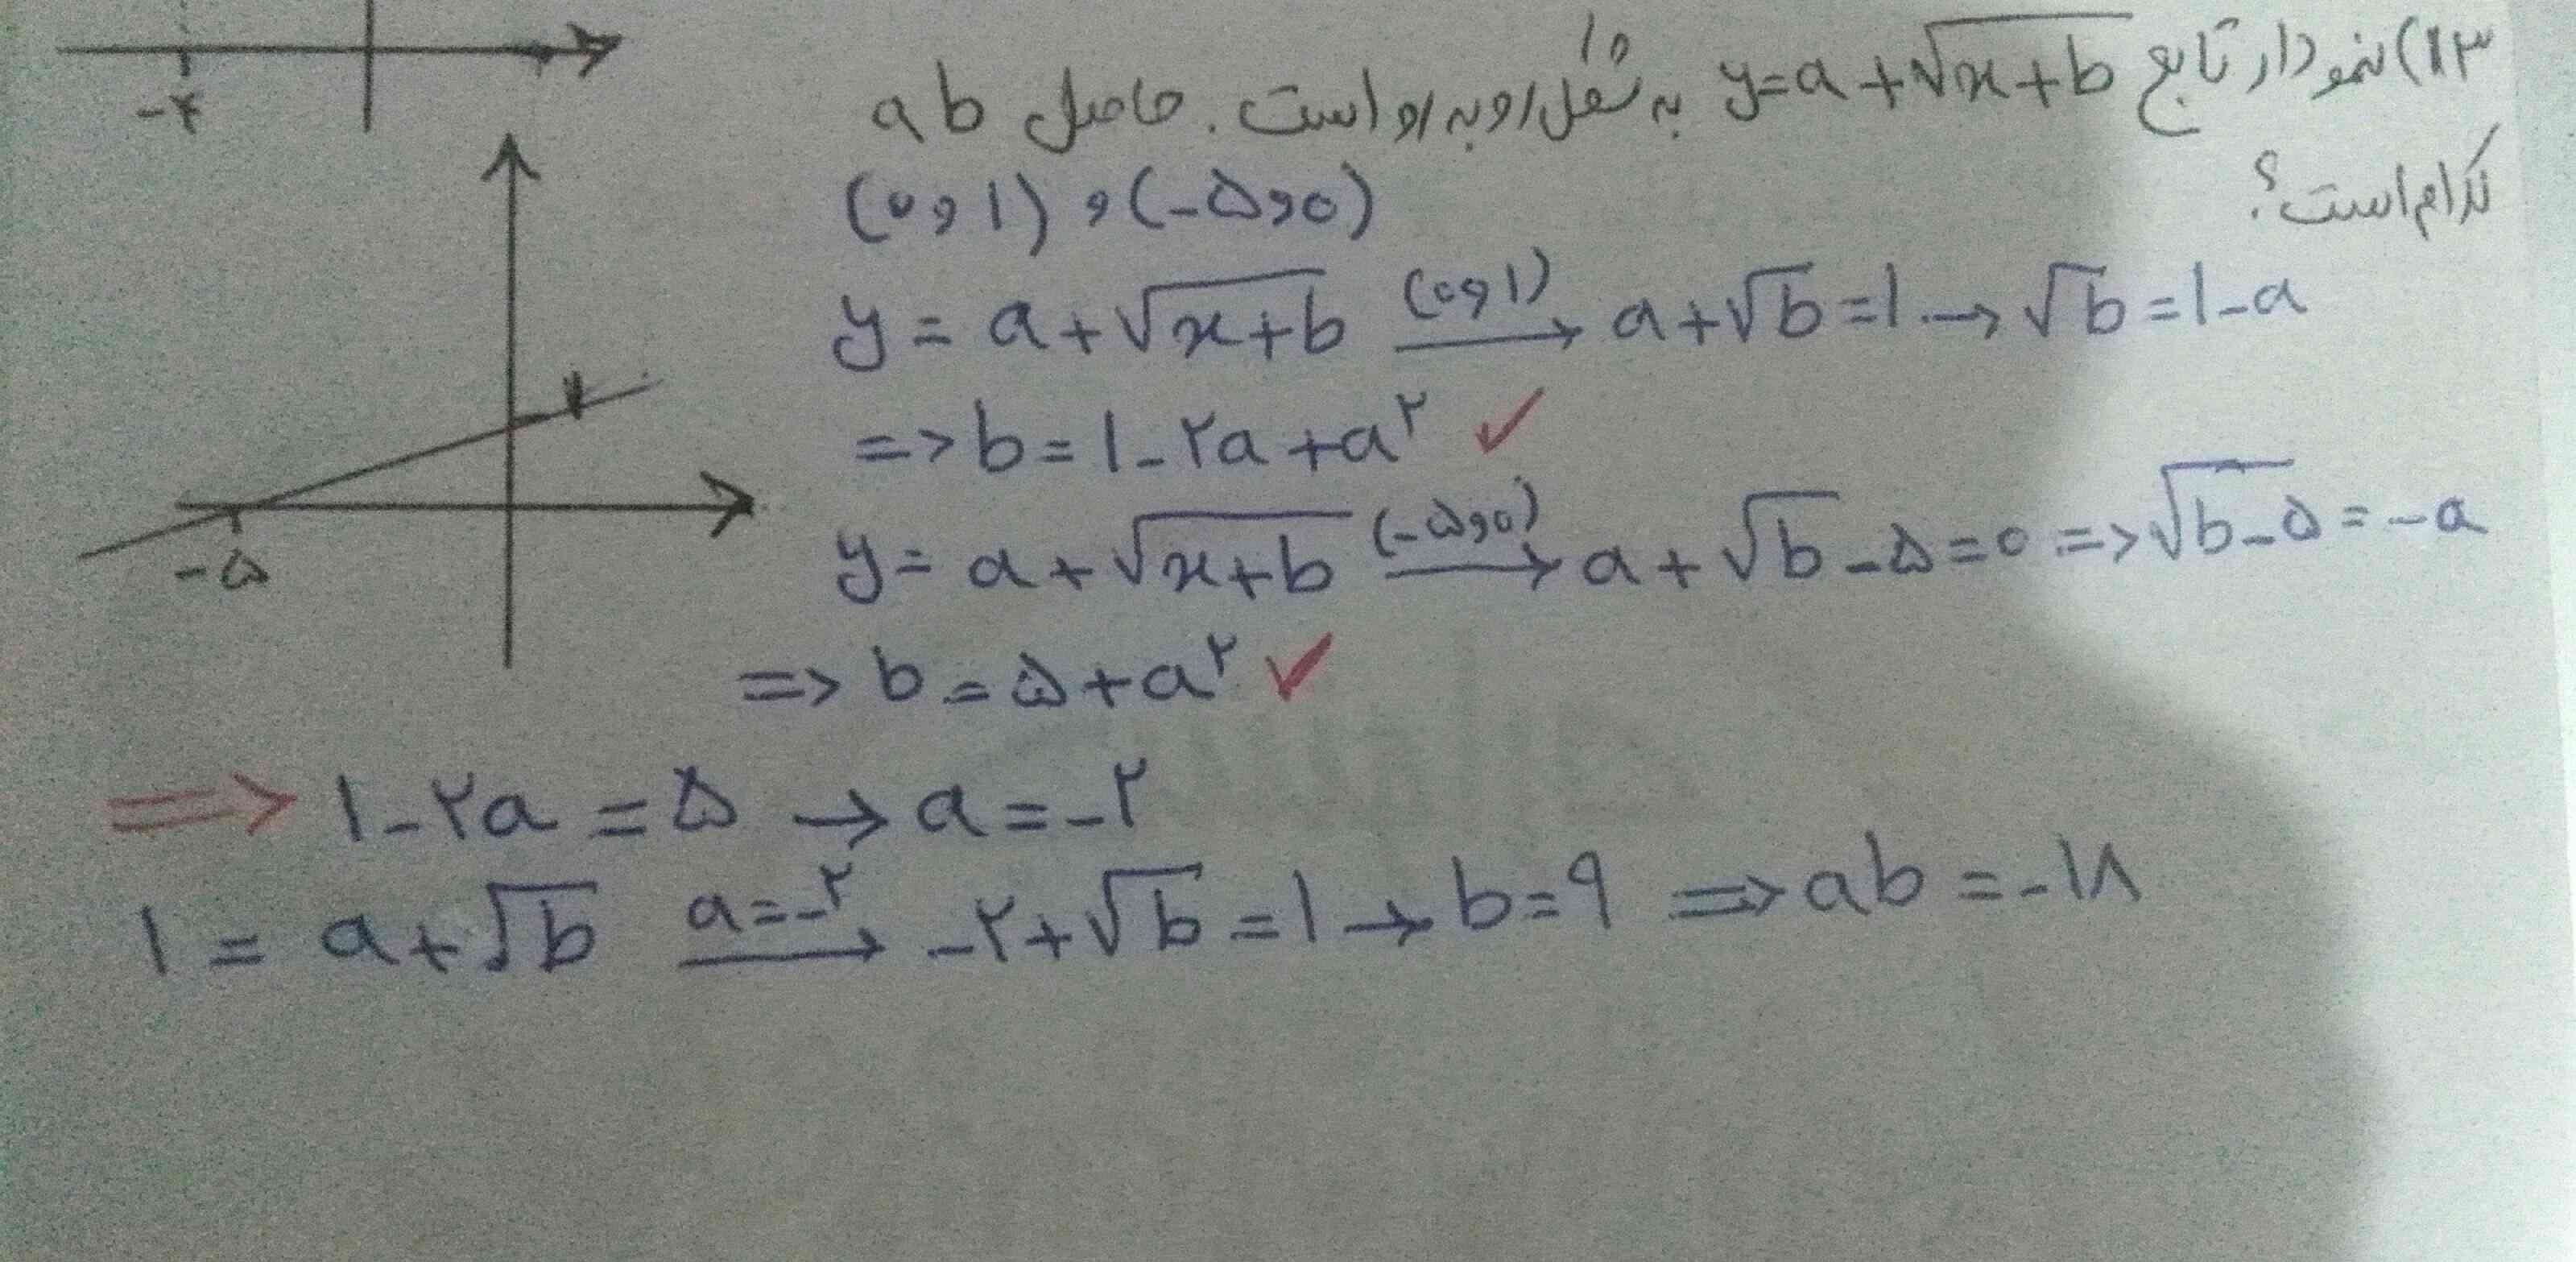 سلام، من اینو خودم جوابشو داشتم ، فقط یجاشو نفهمیدم
اون قسمت تیک اول چرا b برابر با یک منهای  a 2+a² شد؟ ازکجا اومد؟